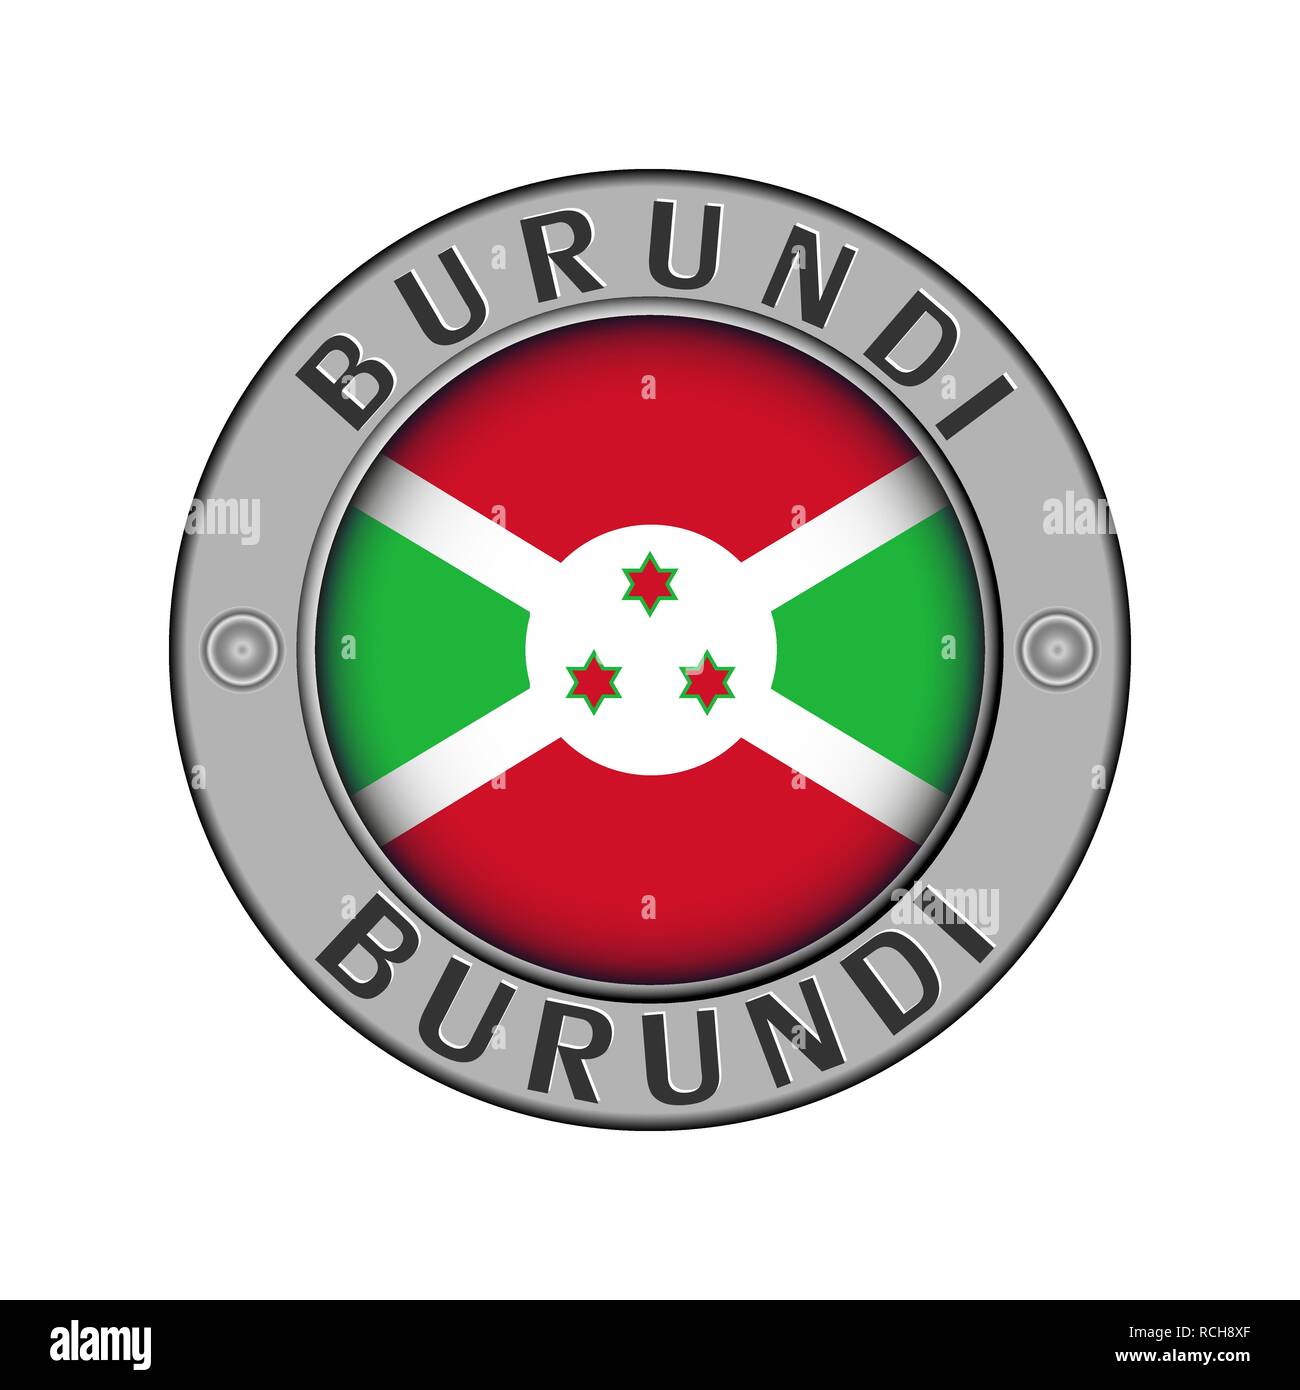 Rotondo di metallo medaglione con il nome del paese del Burundi e un indicatore rotondo nel centro Illustrazione Vettoriale